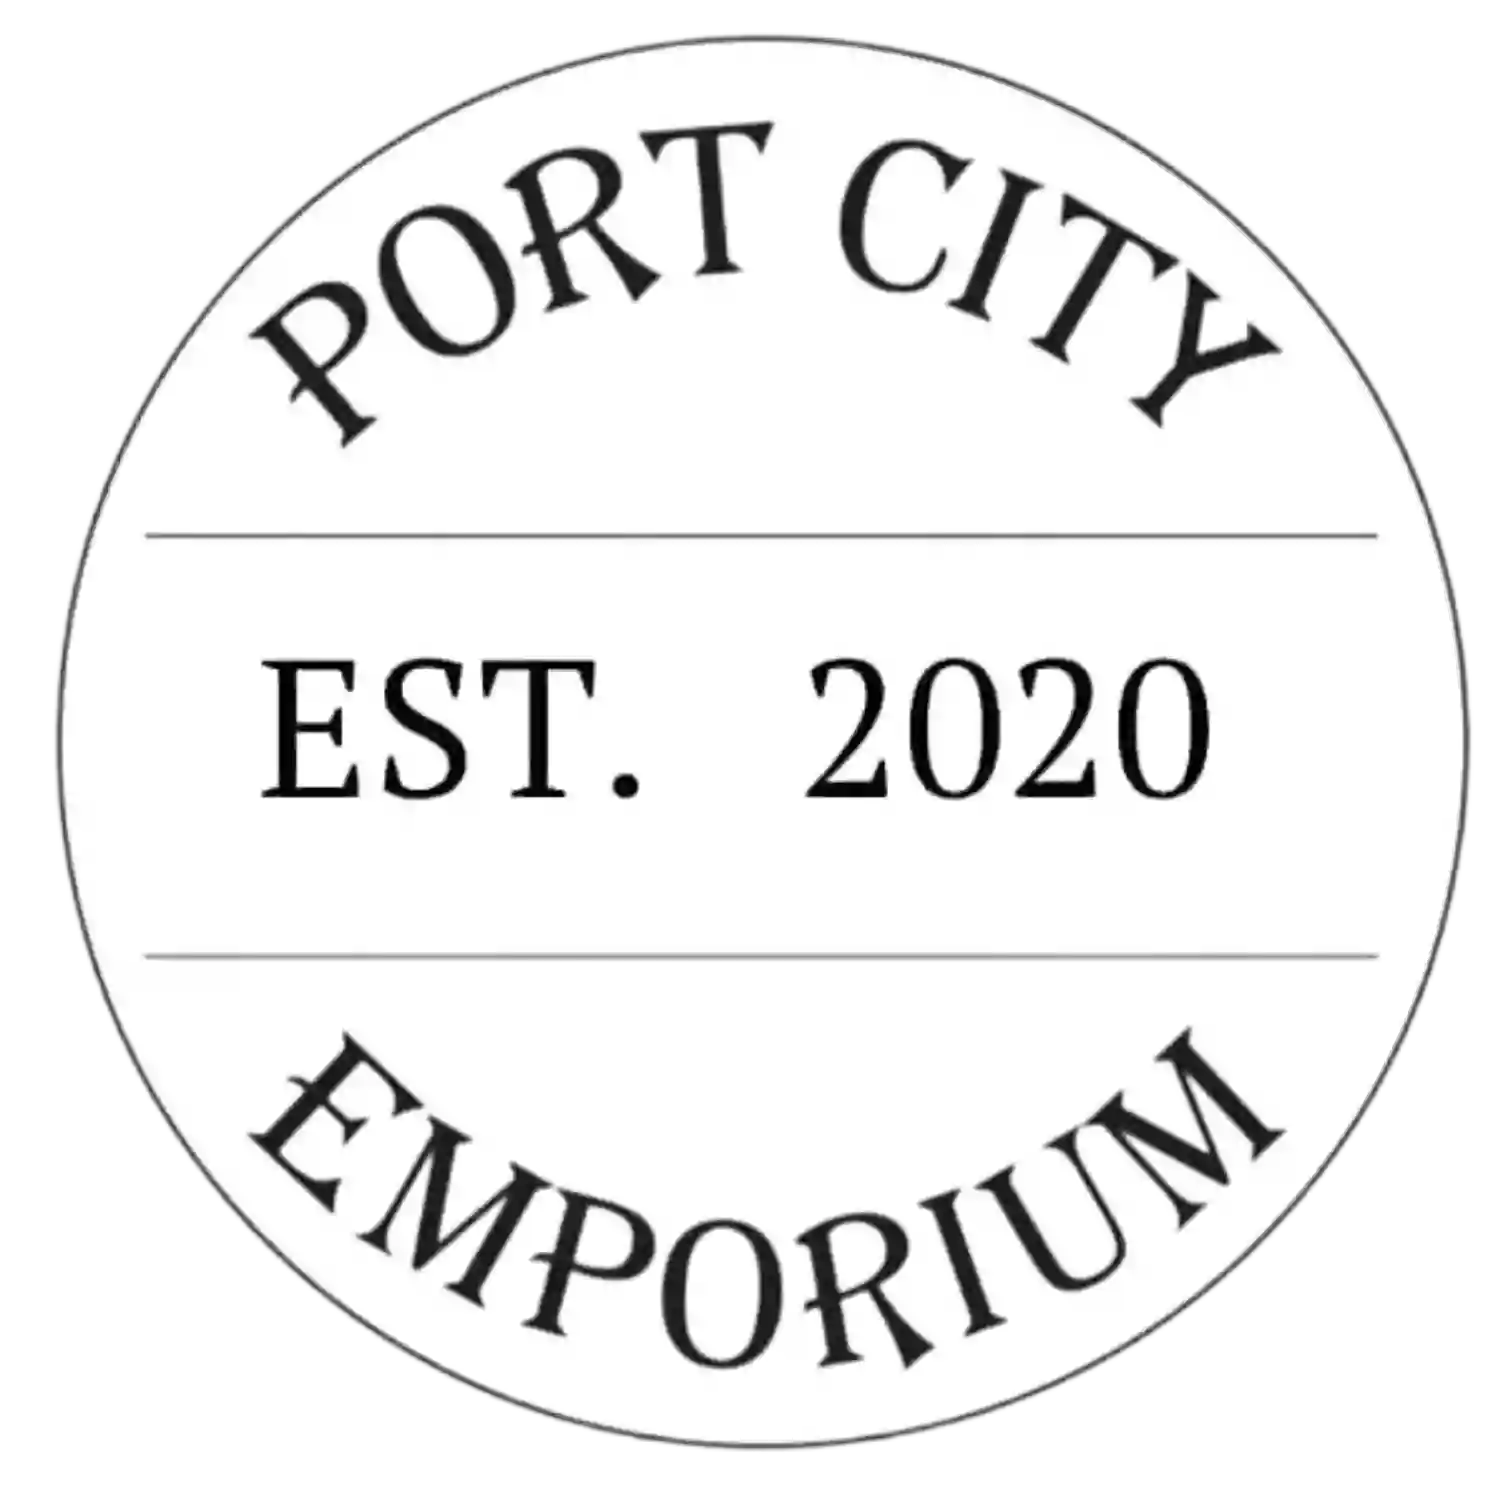 Port City Emporium